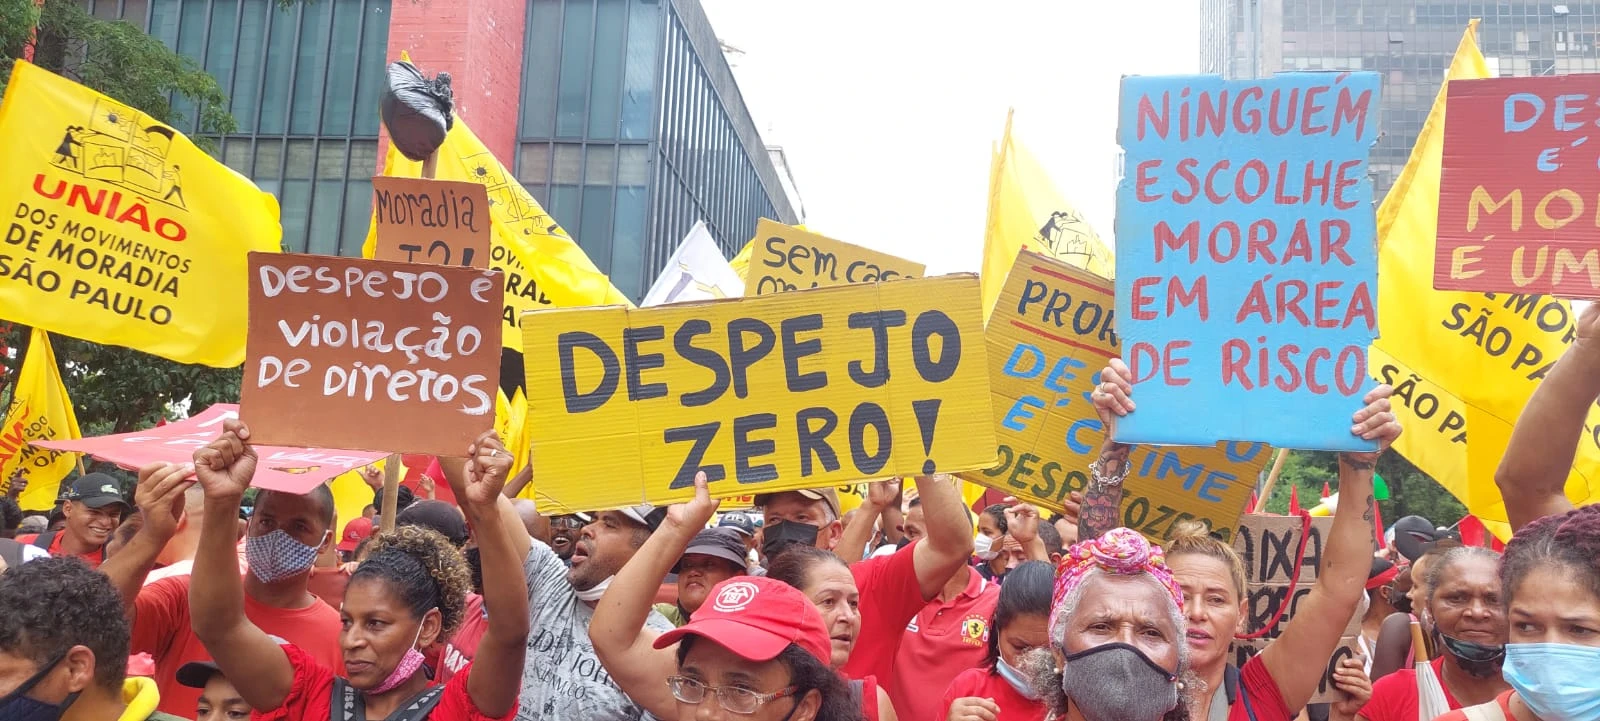 Brasiliens jordlösa behöver din solidaritet